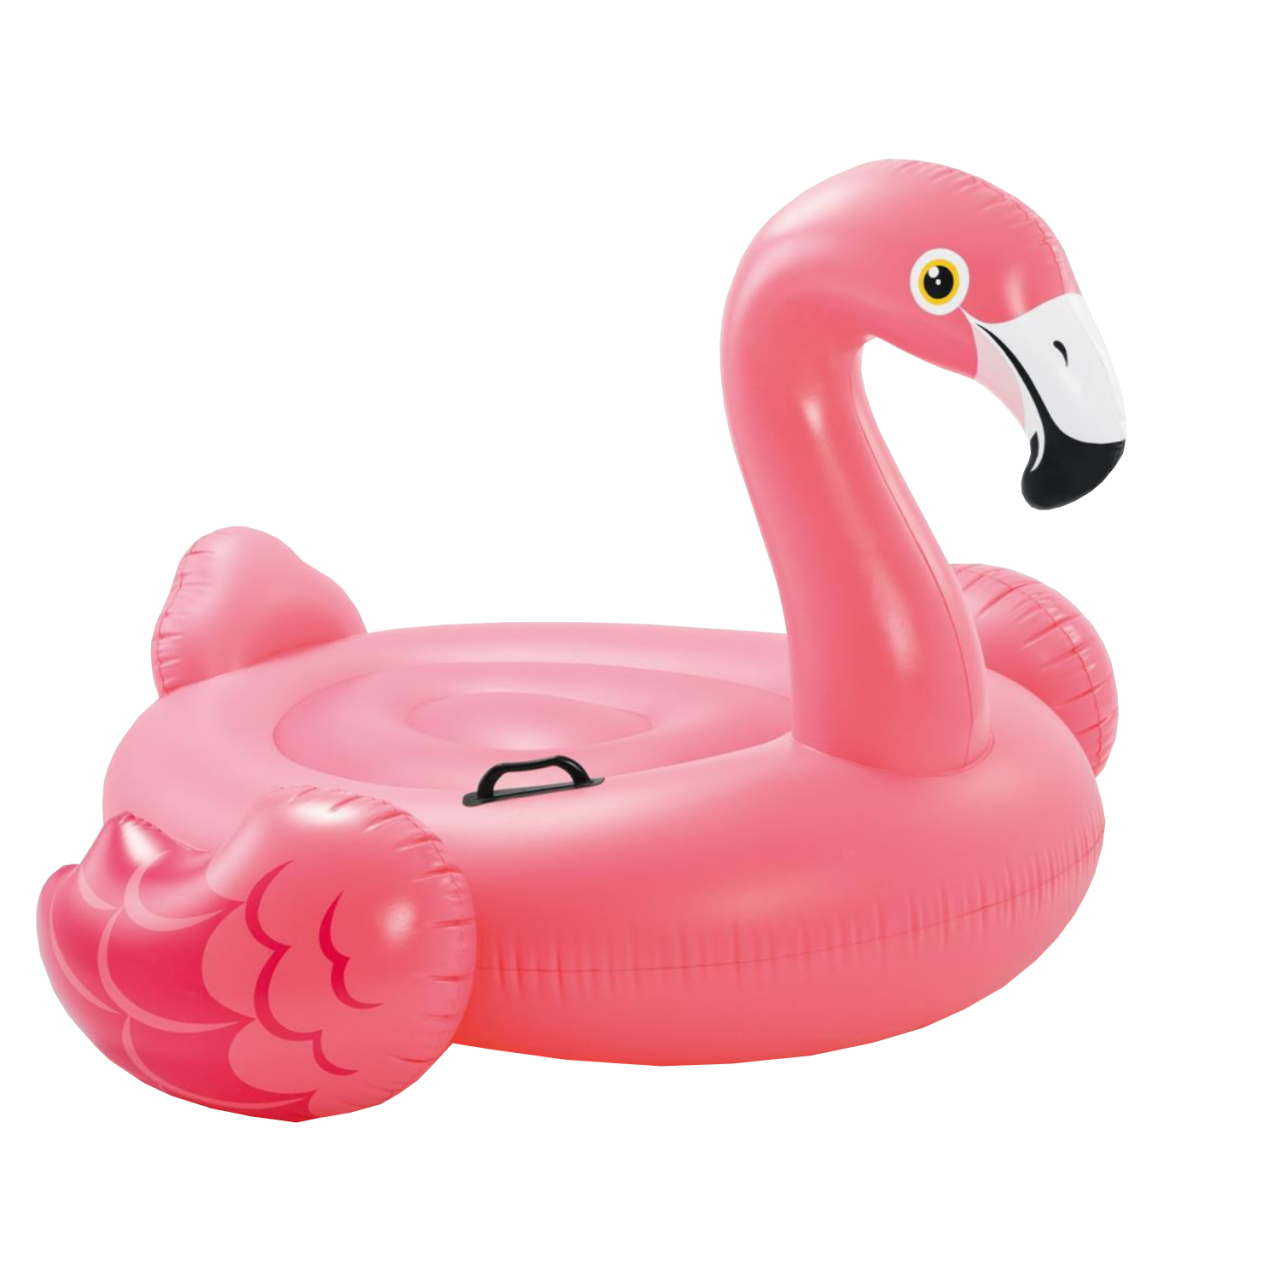 Intex 57558NP Reittier Flamingo Spielzeug, 142 x 137 x 97 cm